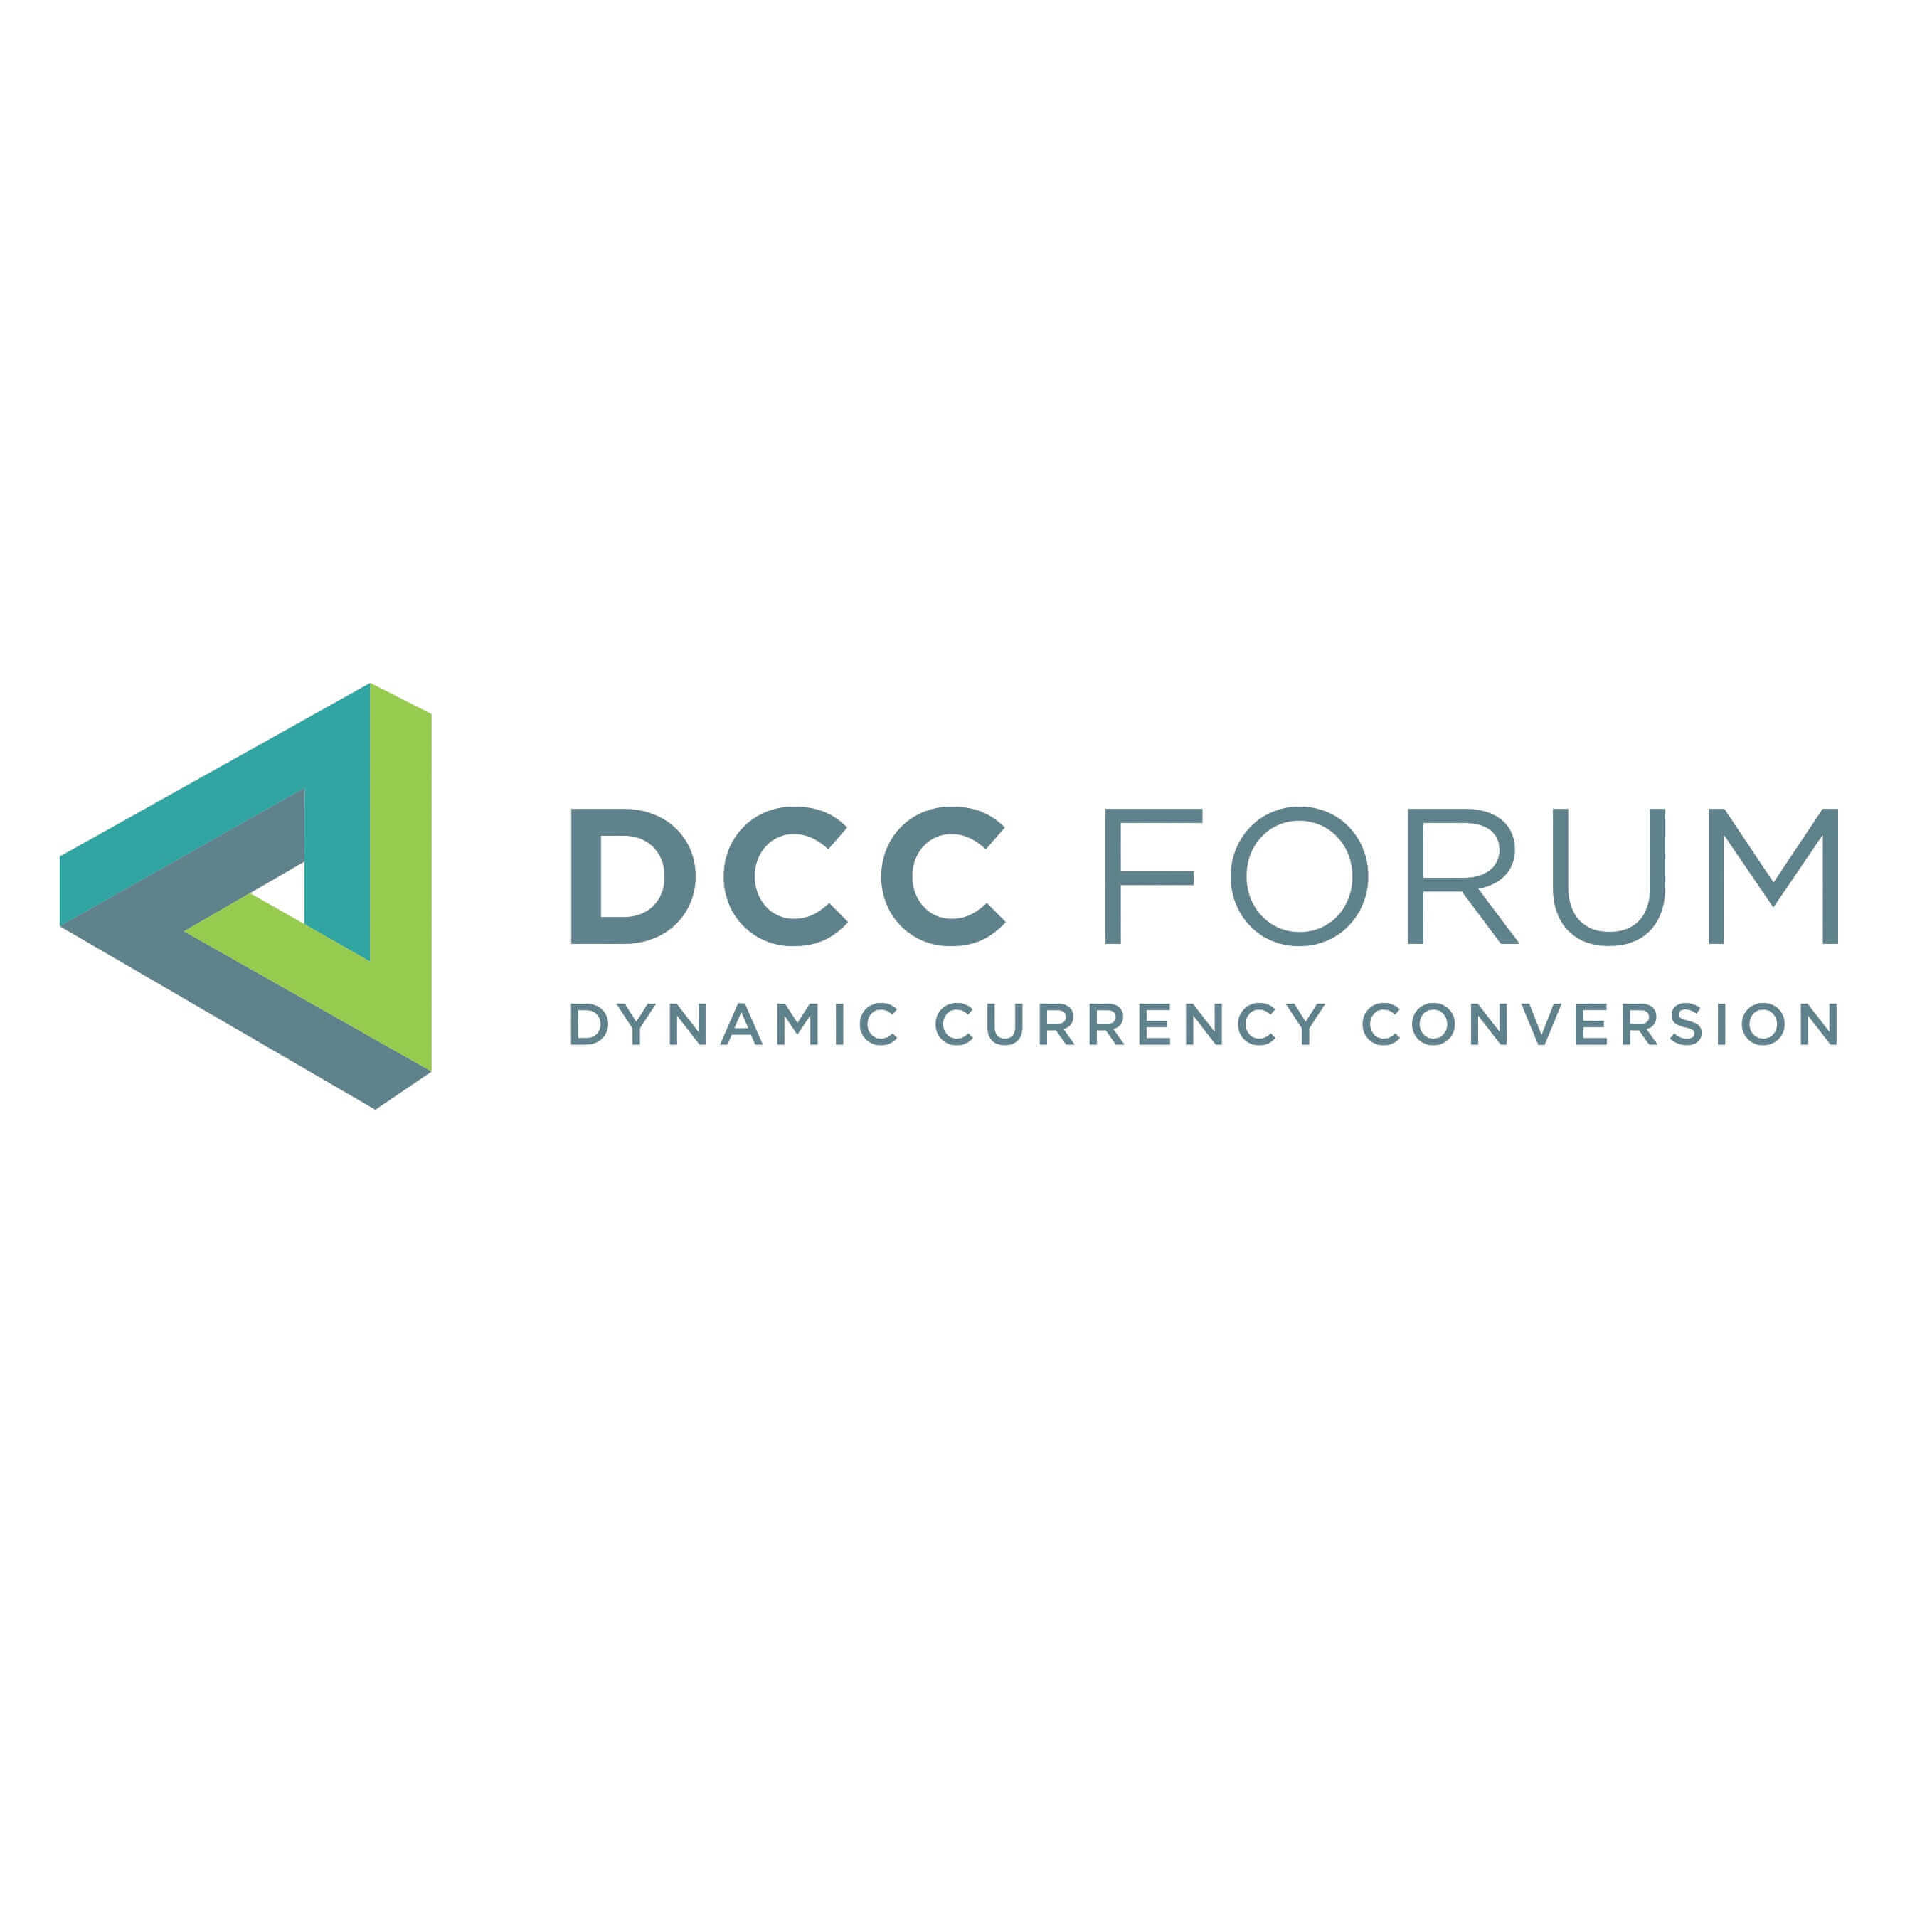 DCC Forum